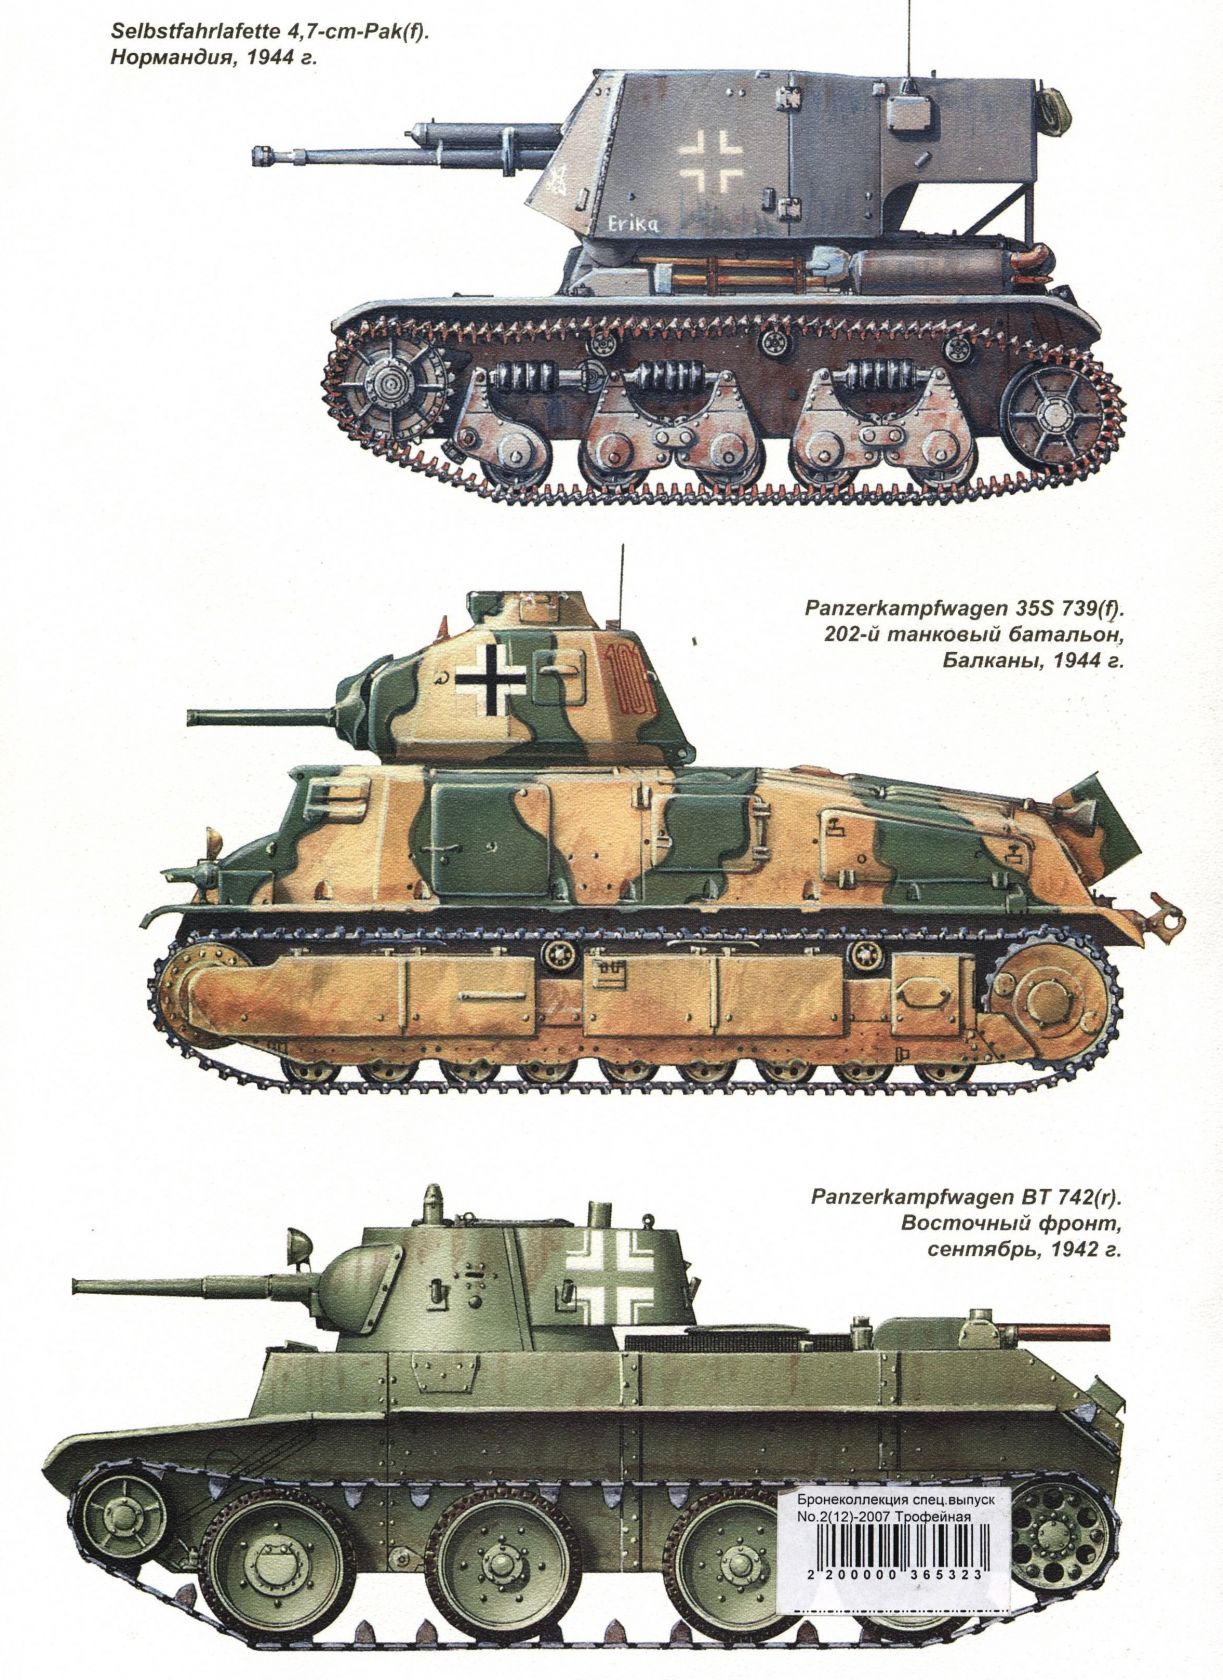 Panzerkampfwagen BT 742(R)